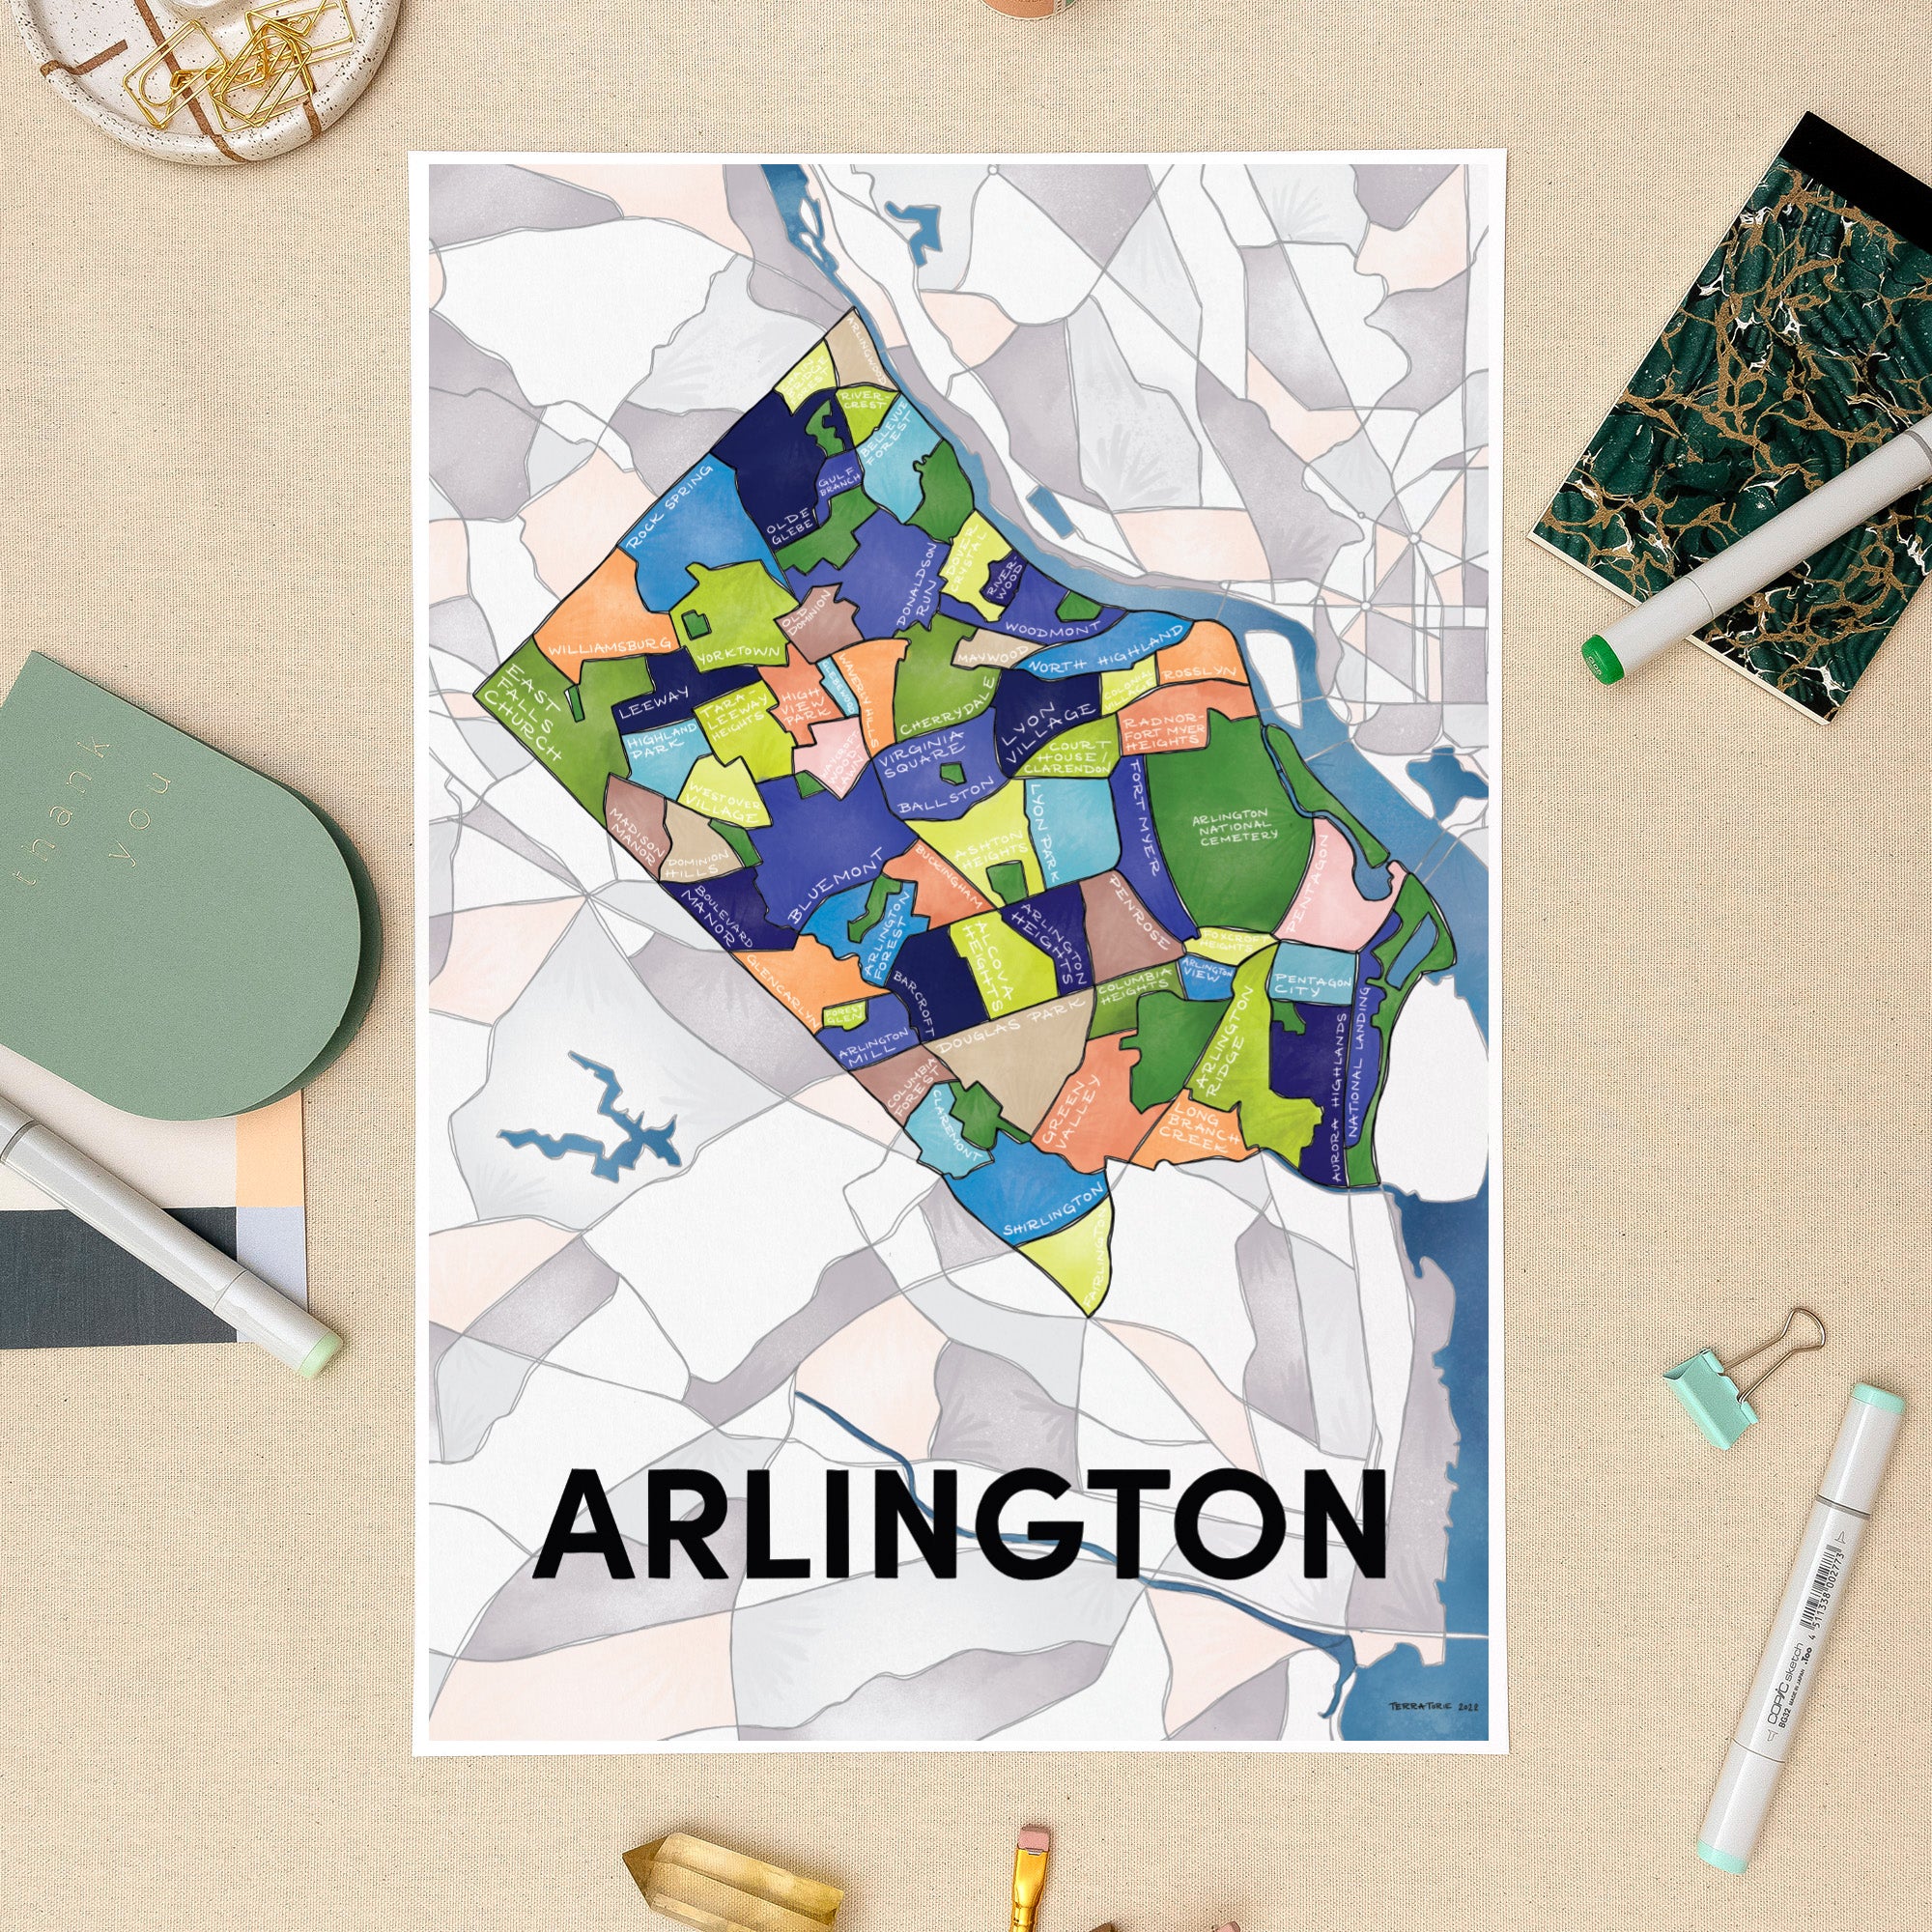 Orient banjo uudgrundelig Arlington Neighborhoods Print — Terratorie Maps + Goods